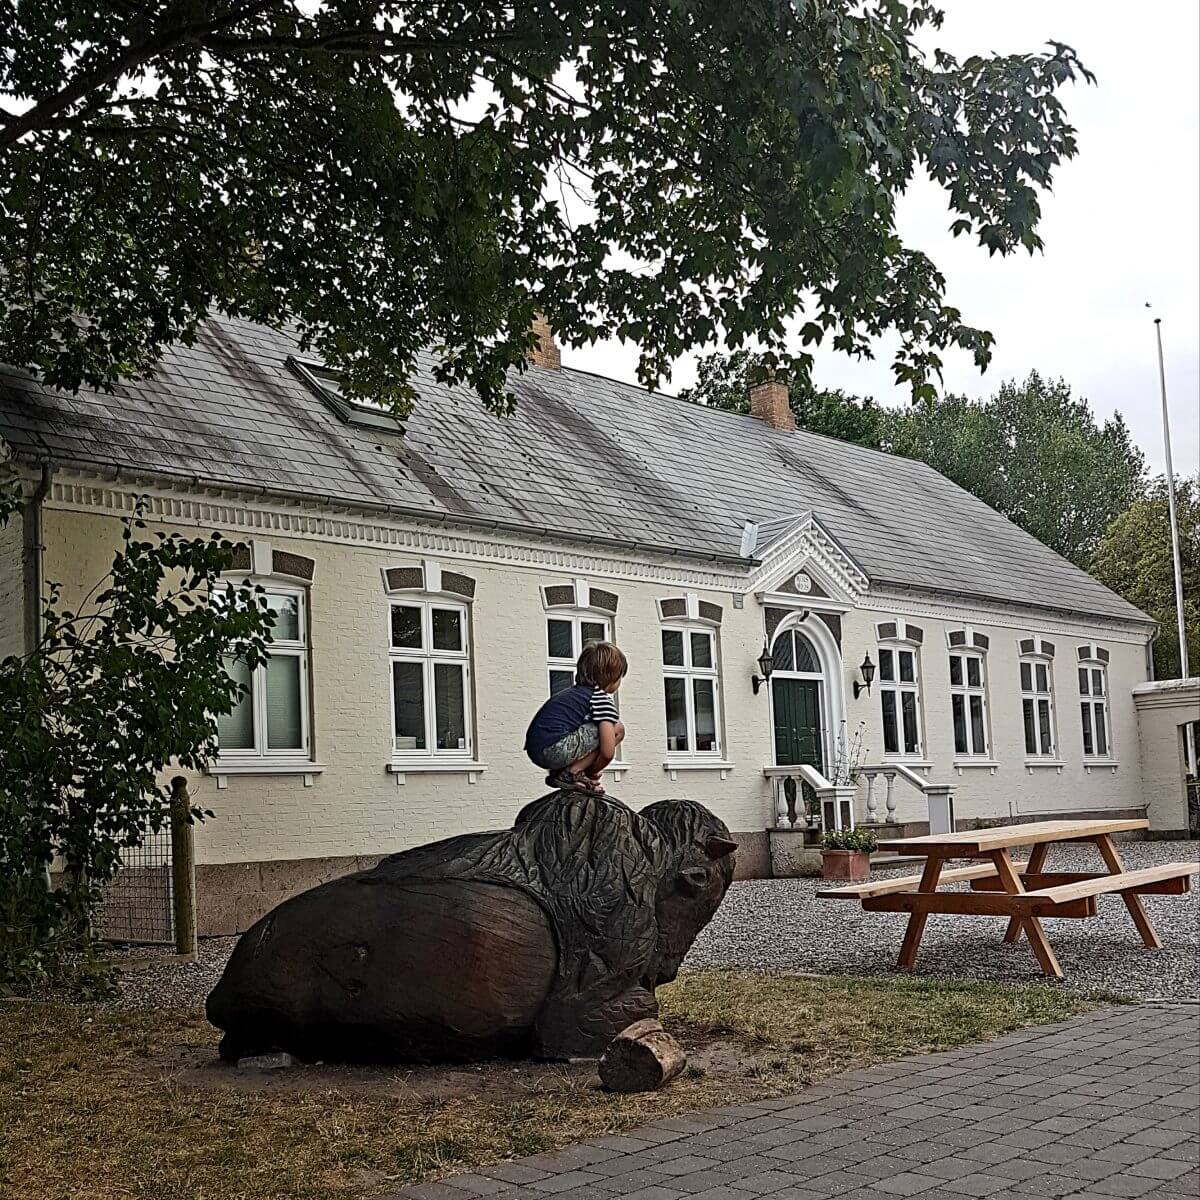 Ditlevsdal Bisonfarm: op bisonsafari of zelfs slapen tussen de bizons, op het eiland Funen in Denemarken #leukmetkids #vakantie #kinderen 